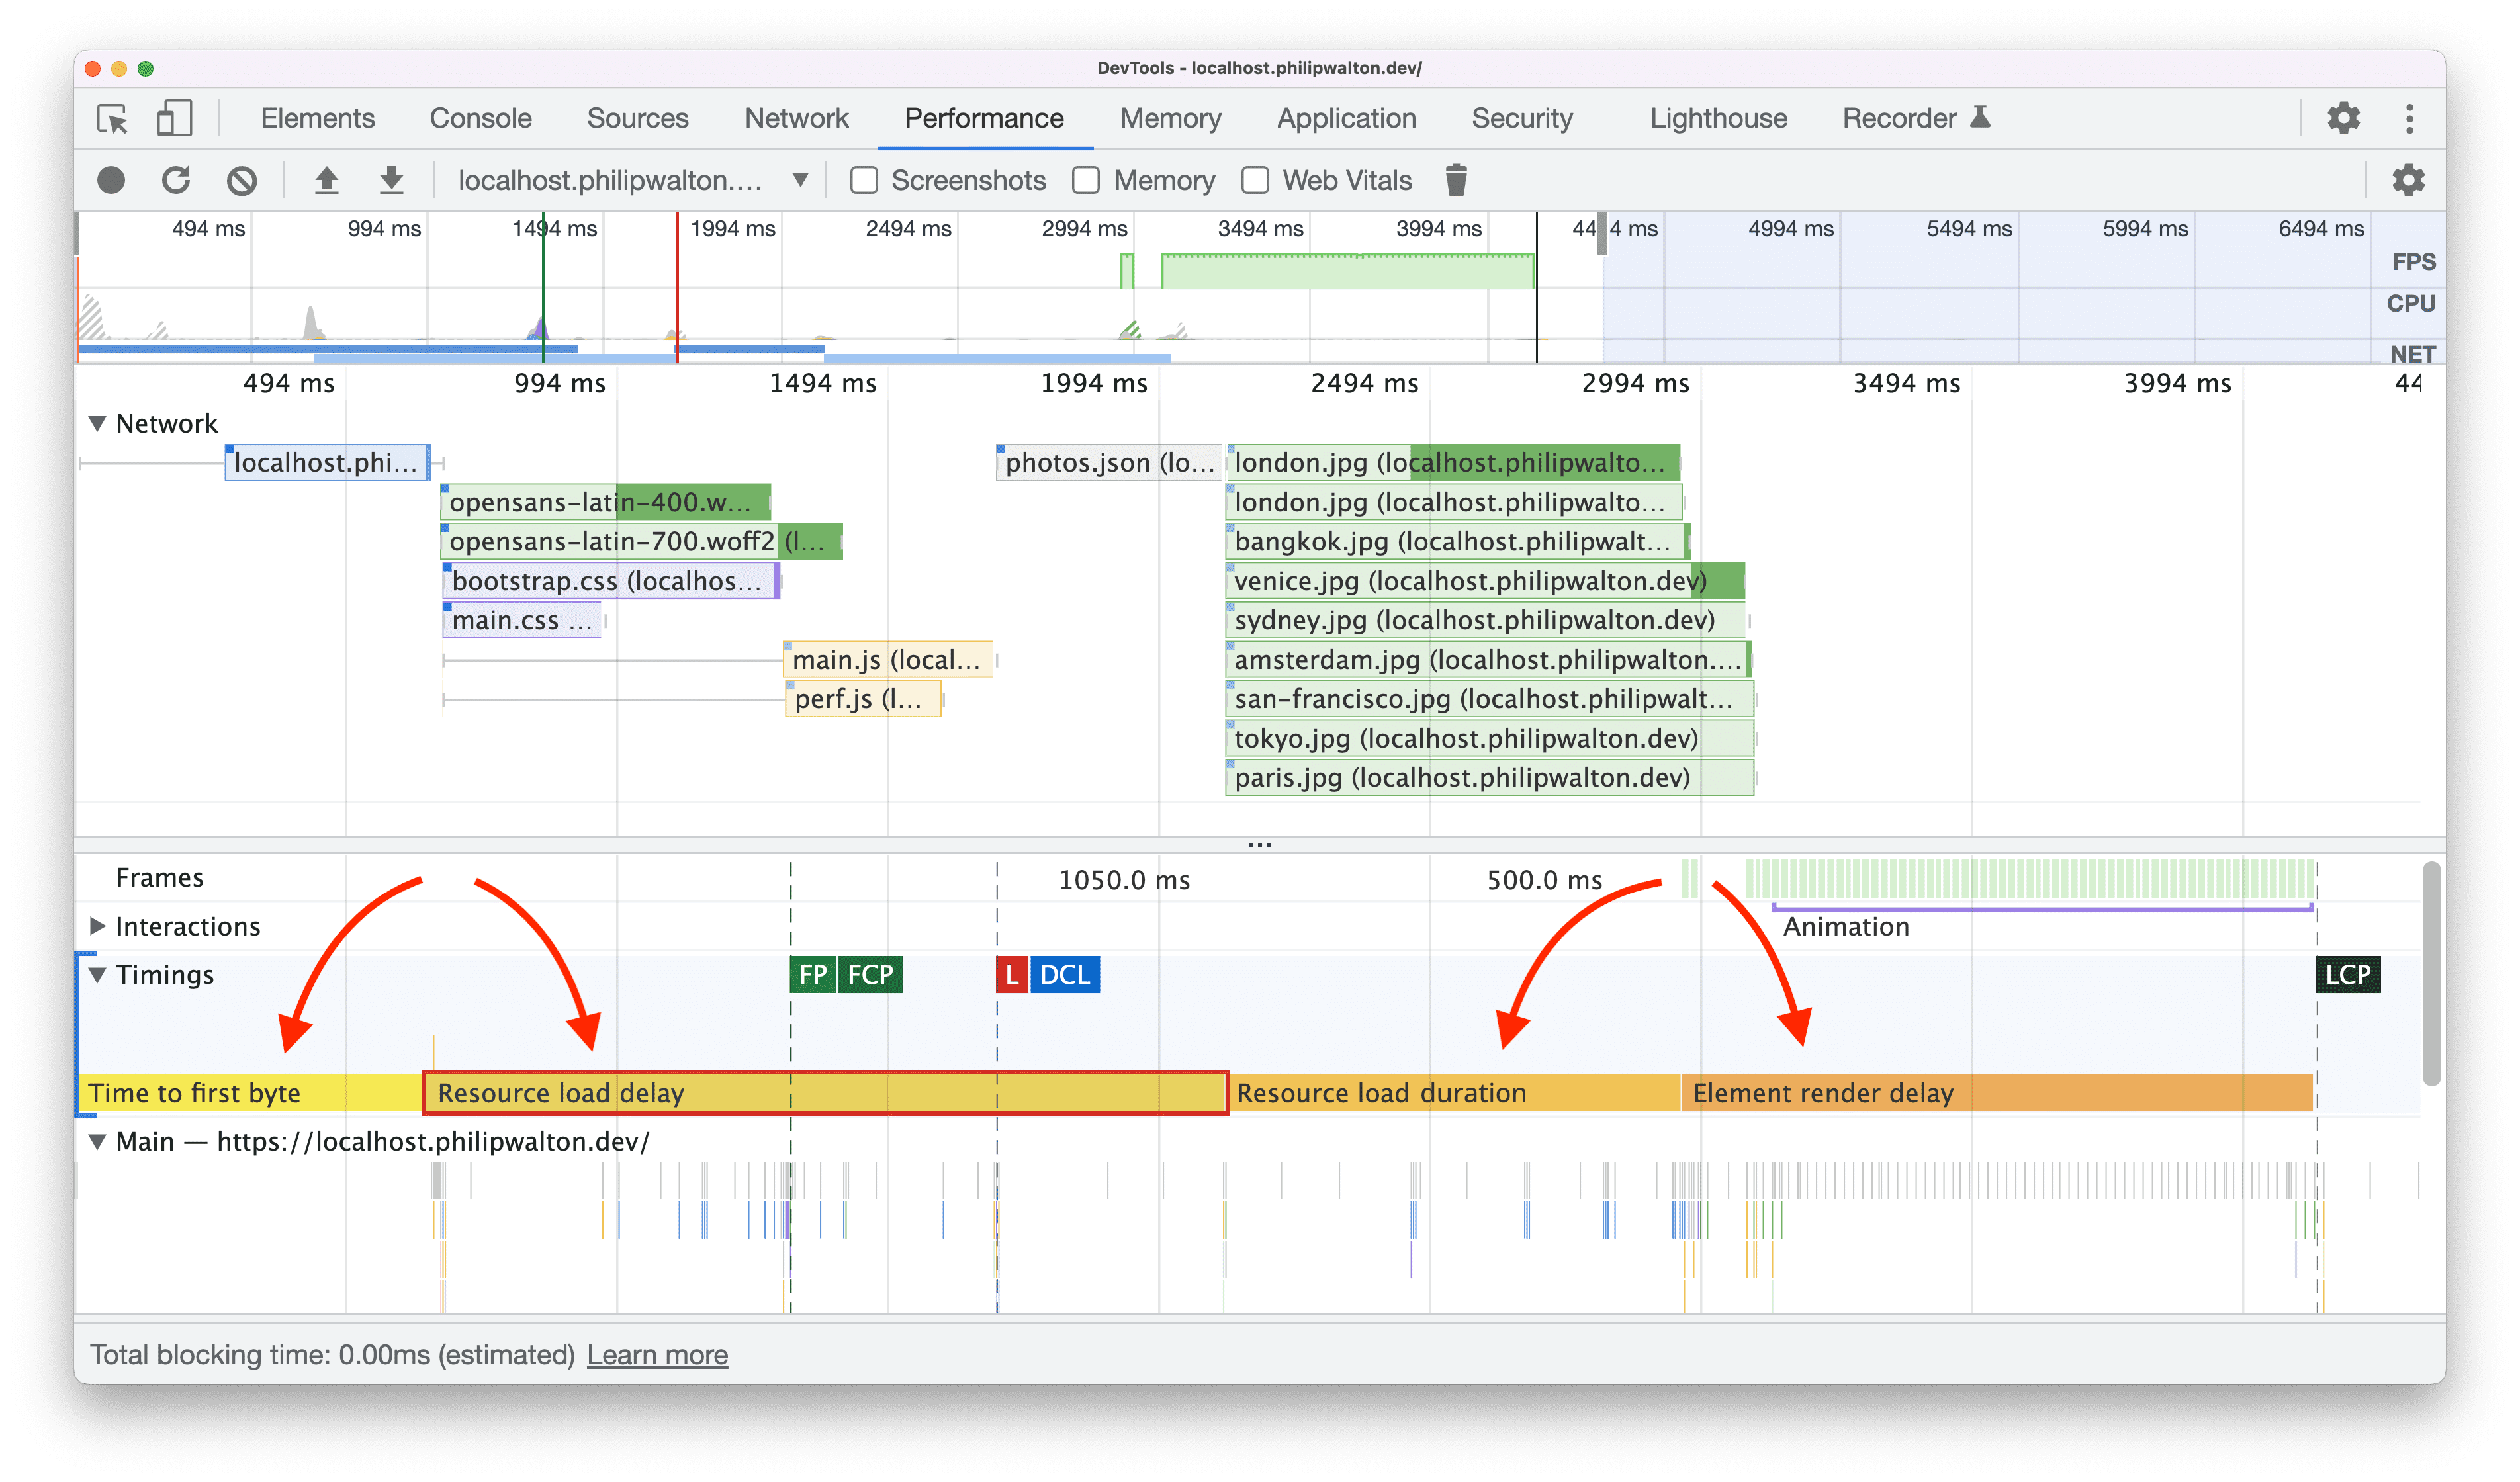 Pomiary czasu działań użytkowników w podkategoriach LCP wizualizowanych w Narzędziach deweloperskich w Chrome